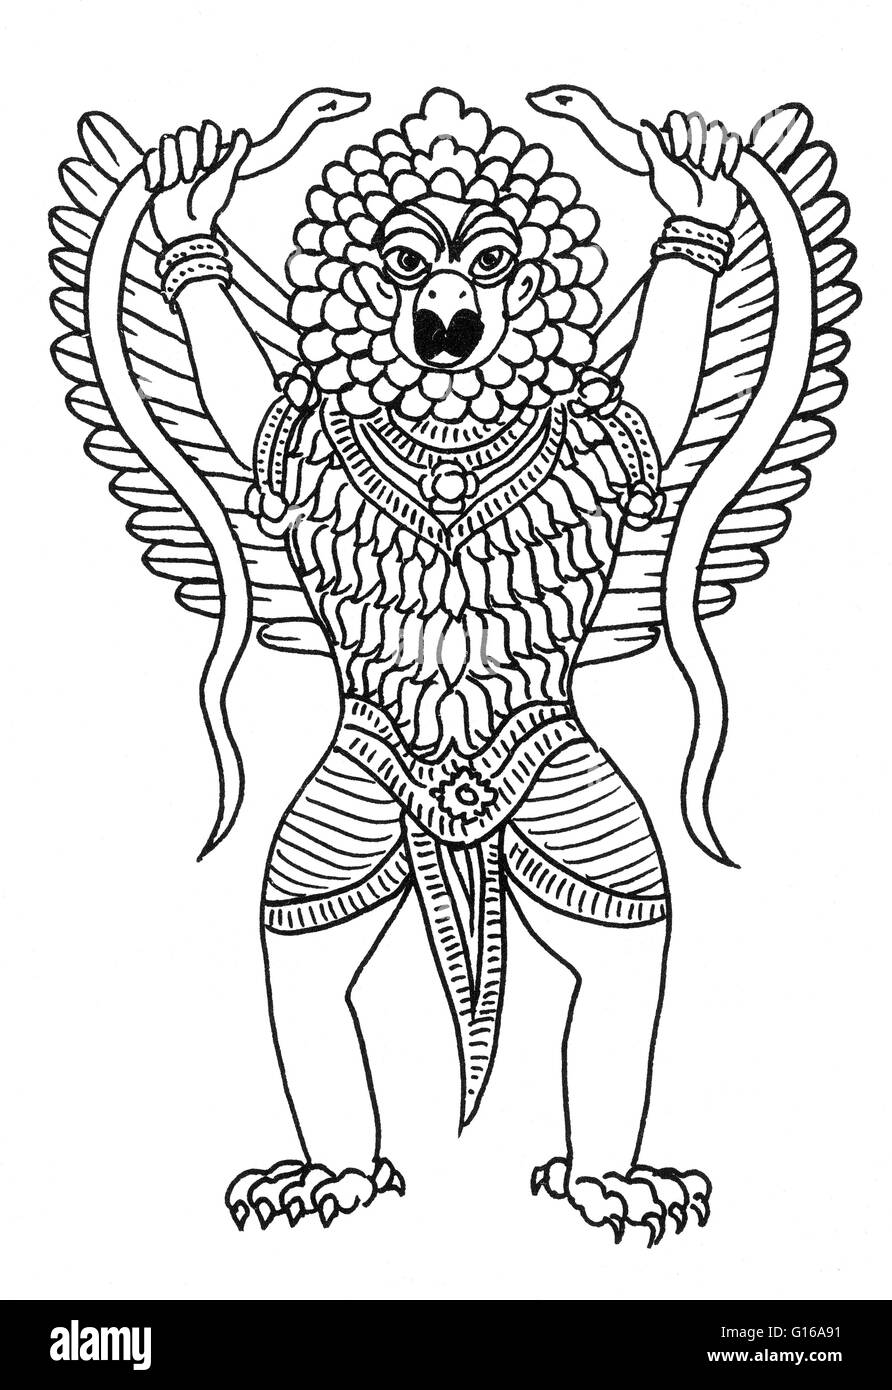 Il Garuda è un grande mitico uccello o bird-come creatura che appare in entrambi indù e mitologia buddista. Garuda è uno dei tre principali divinità animale nella mitologia indù che si è evoluto dopo il periodo vedico nella storia indiana. Altri tw Foto Stock